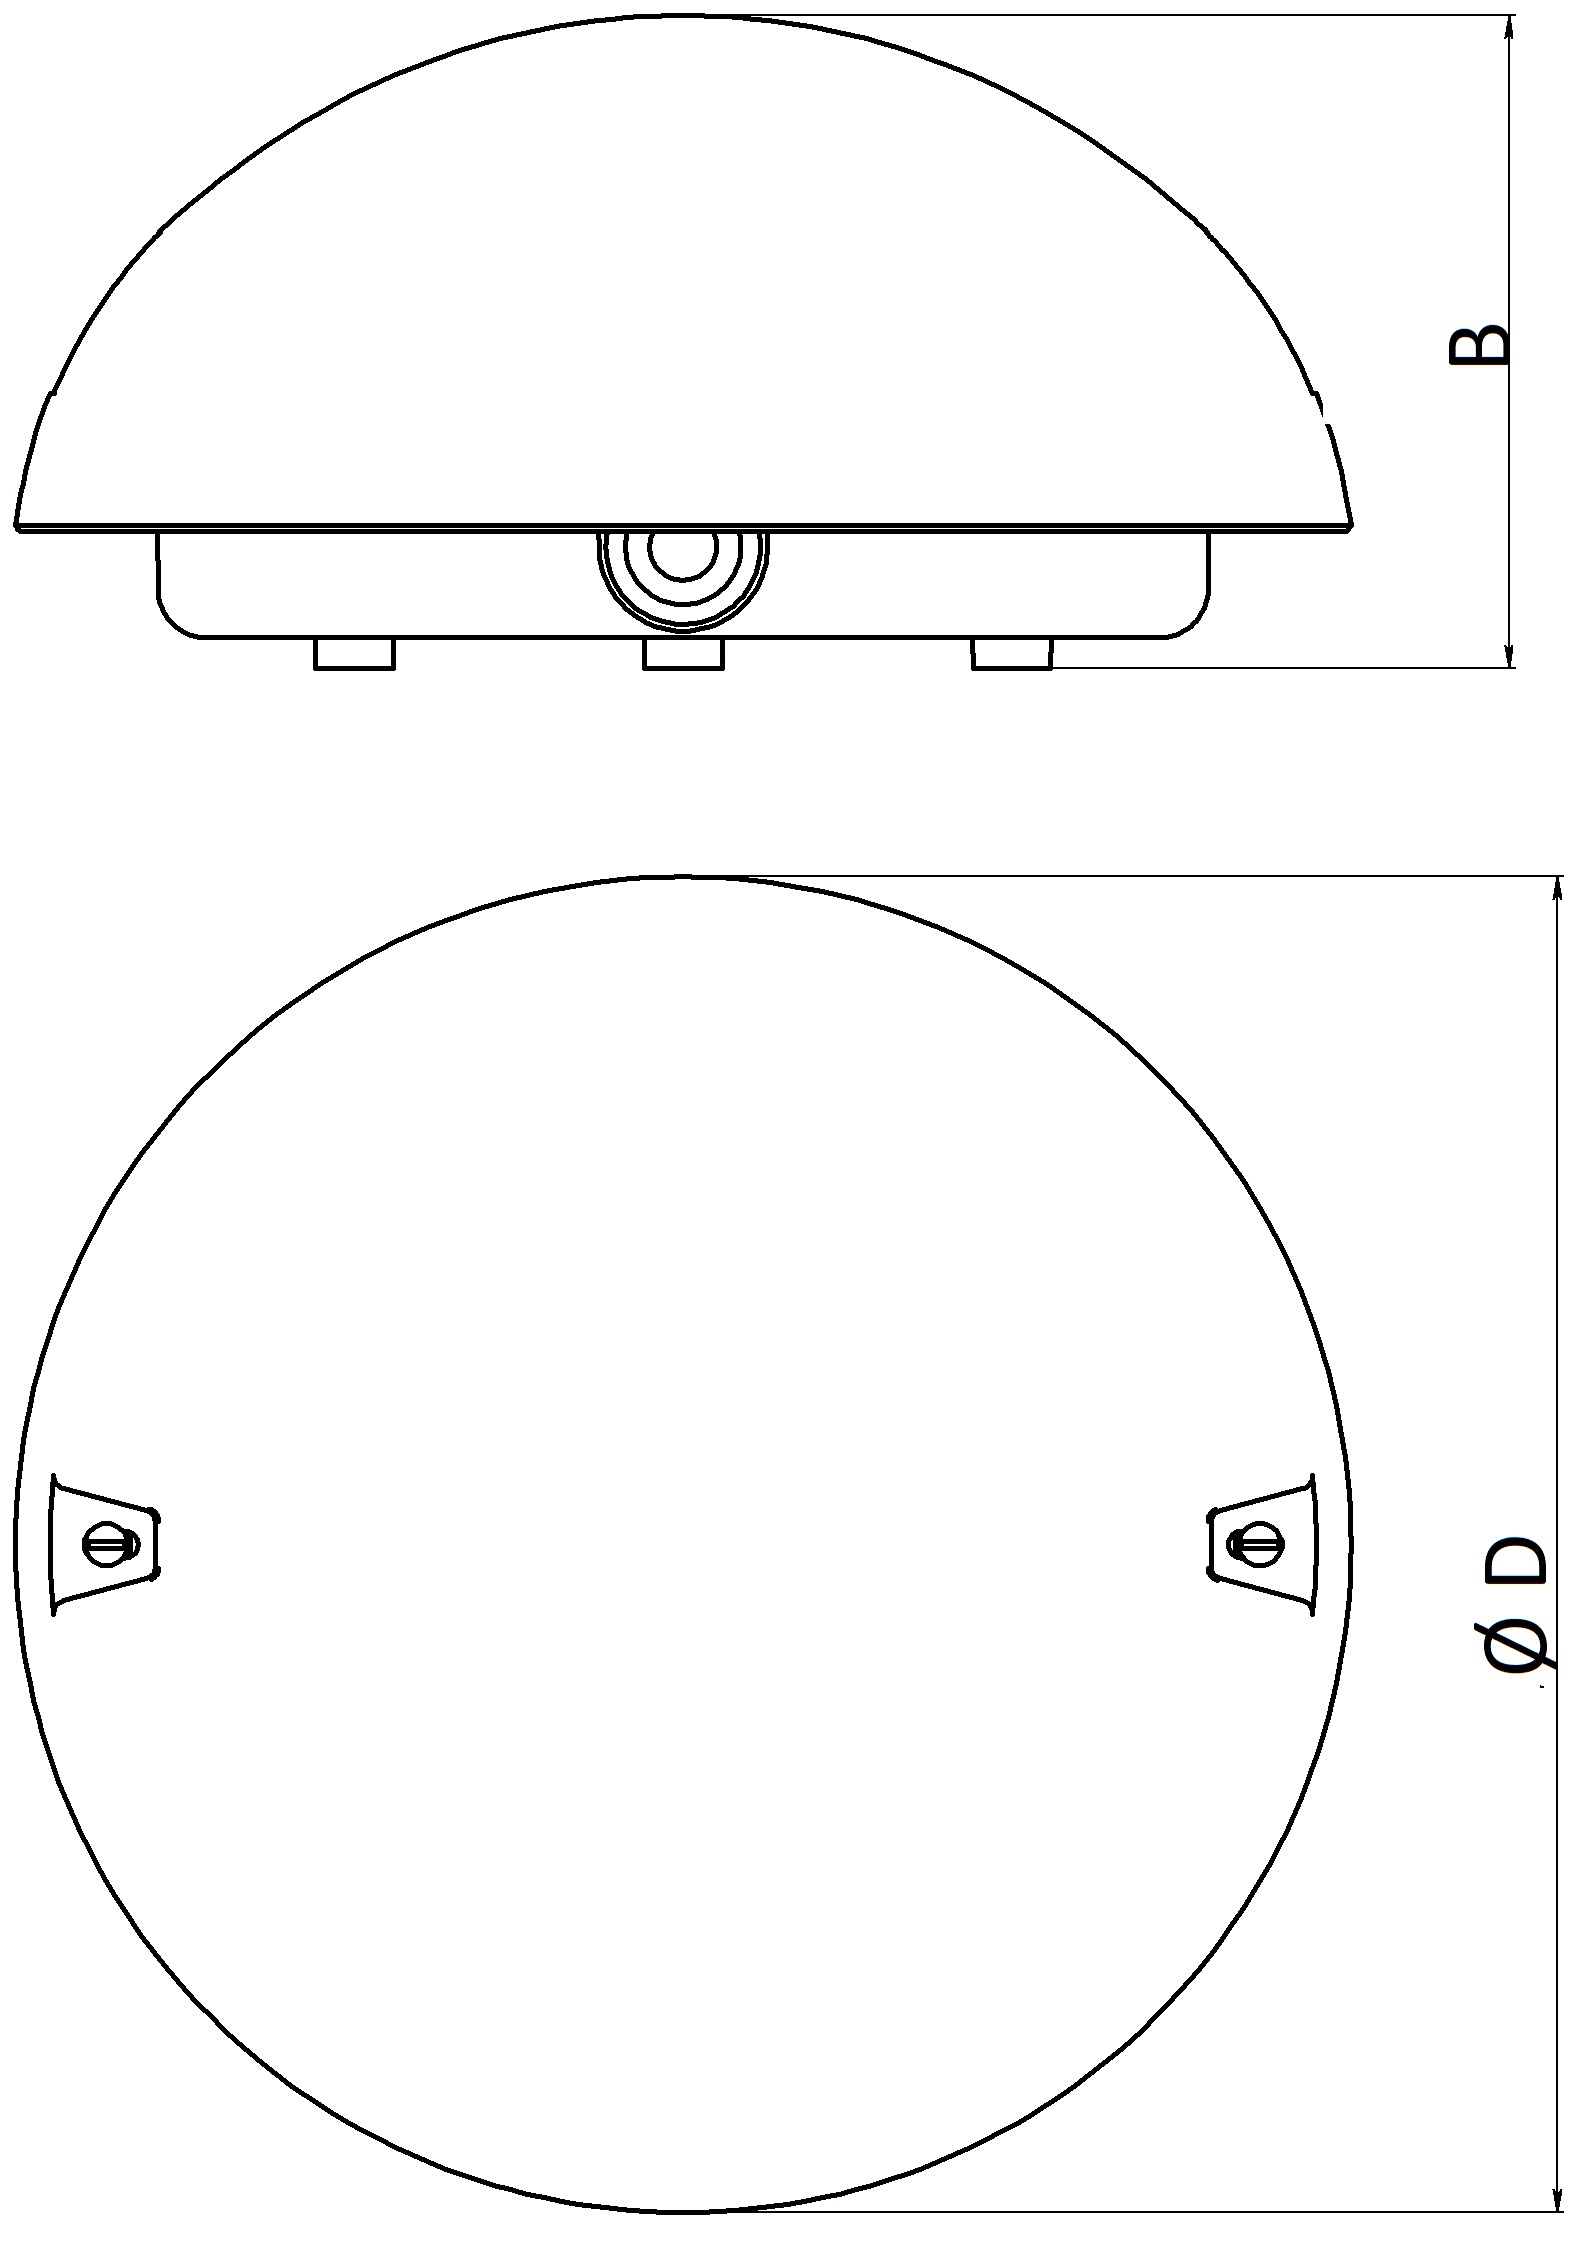 Светильник промышленный ЭРА Сириус 60Вт, цоколь E27, IP54, форма - круг, цвет - белый